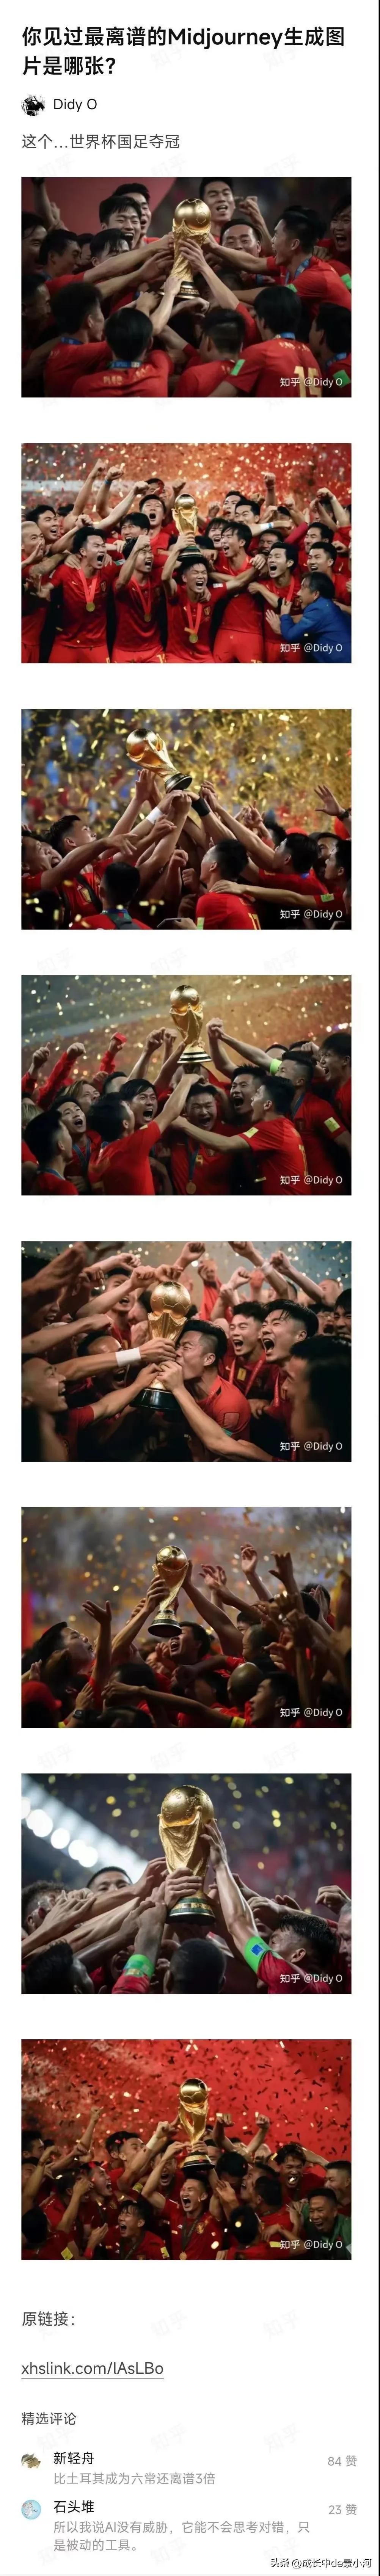 让AI生成中国男足夺得世界杯冠军的照片会是什么样子？
现在是幻想时间，这生成的照(1)